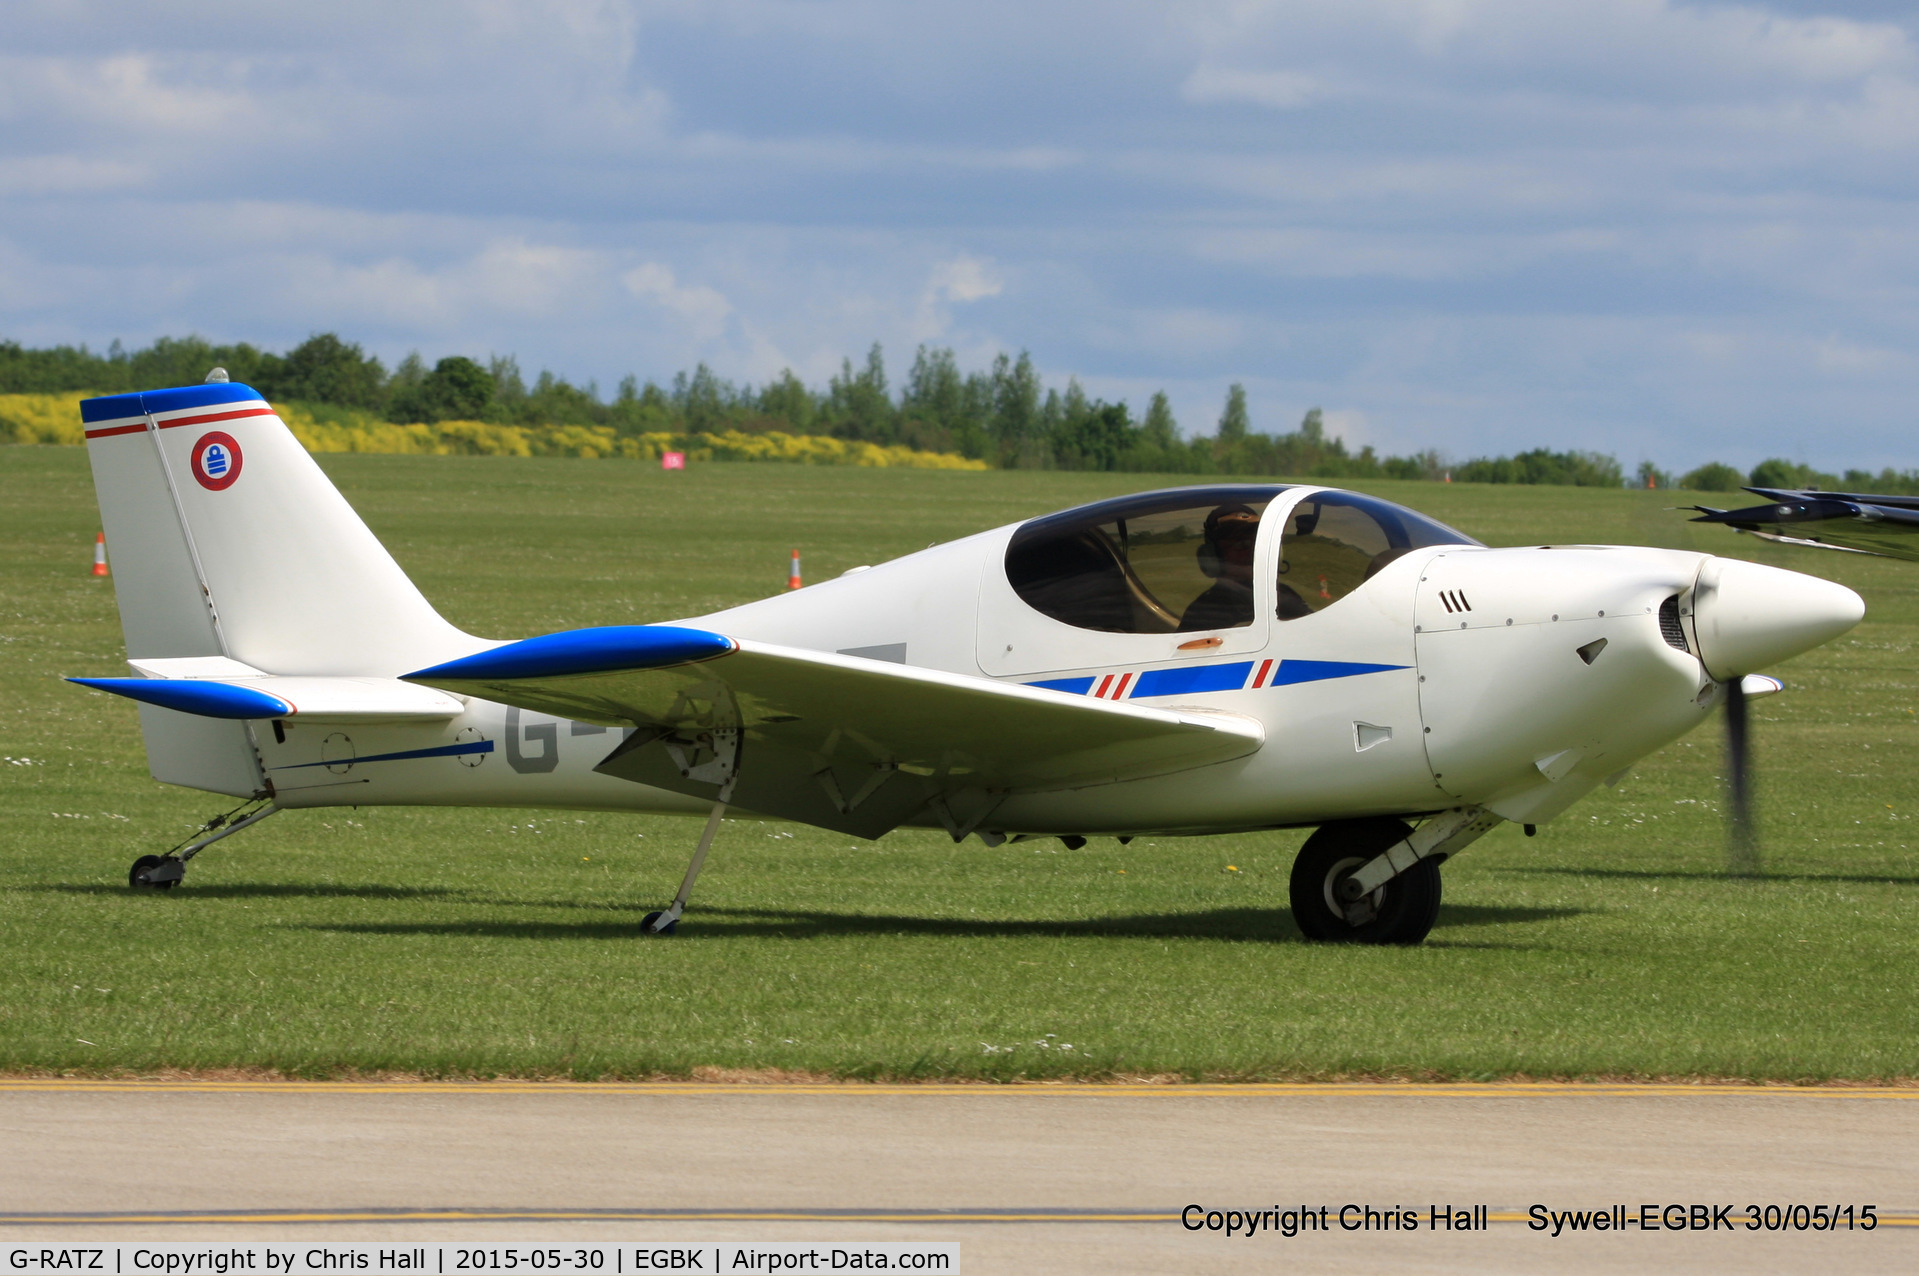 G-RATZ, 1997 Europa Monowheel C/N PFA 247-12582, at Aeroexpo 2015